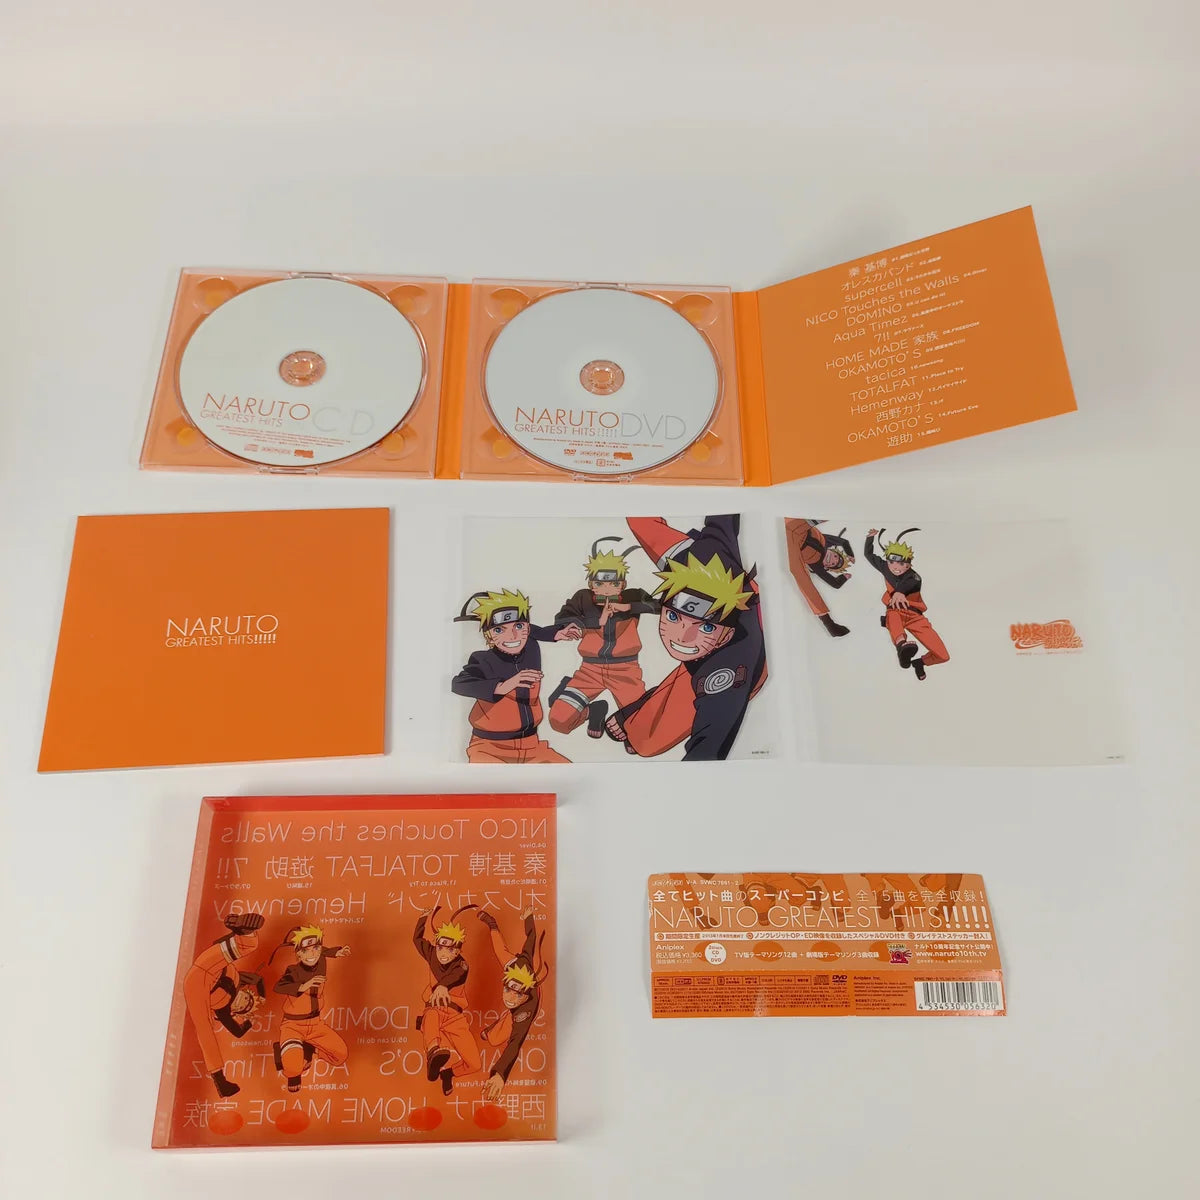 Naruto Greatest Hits !!!